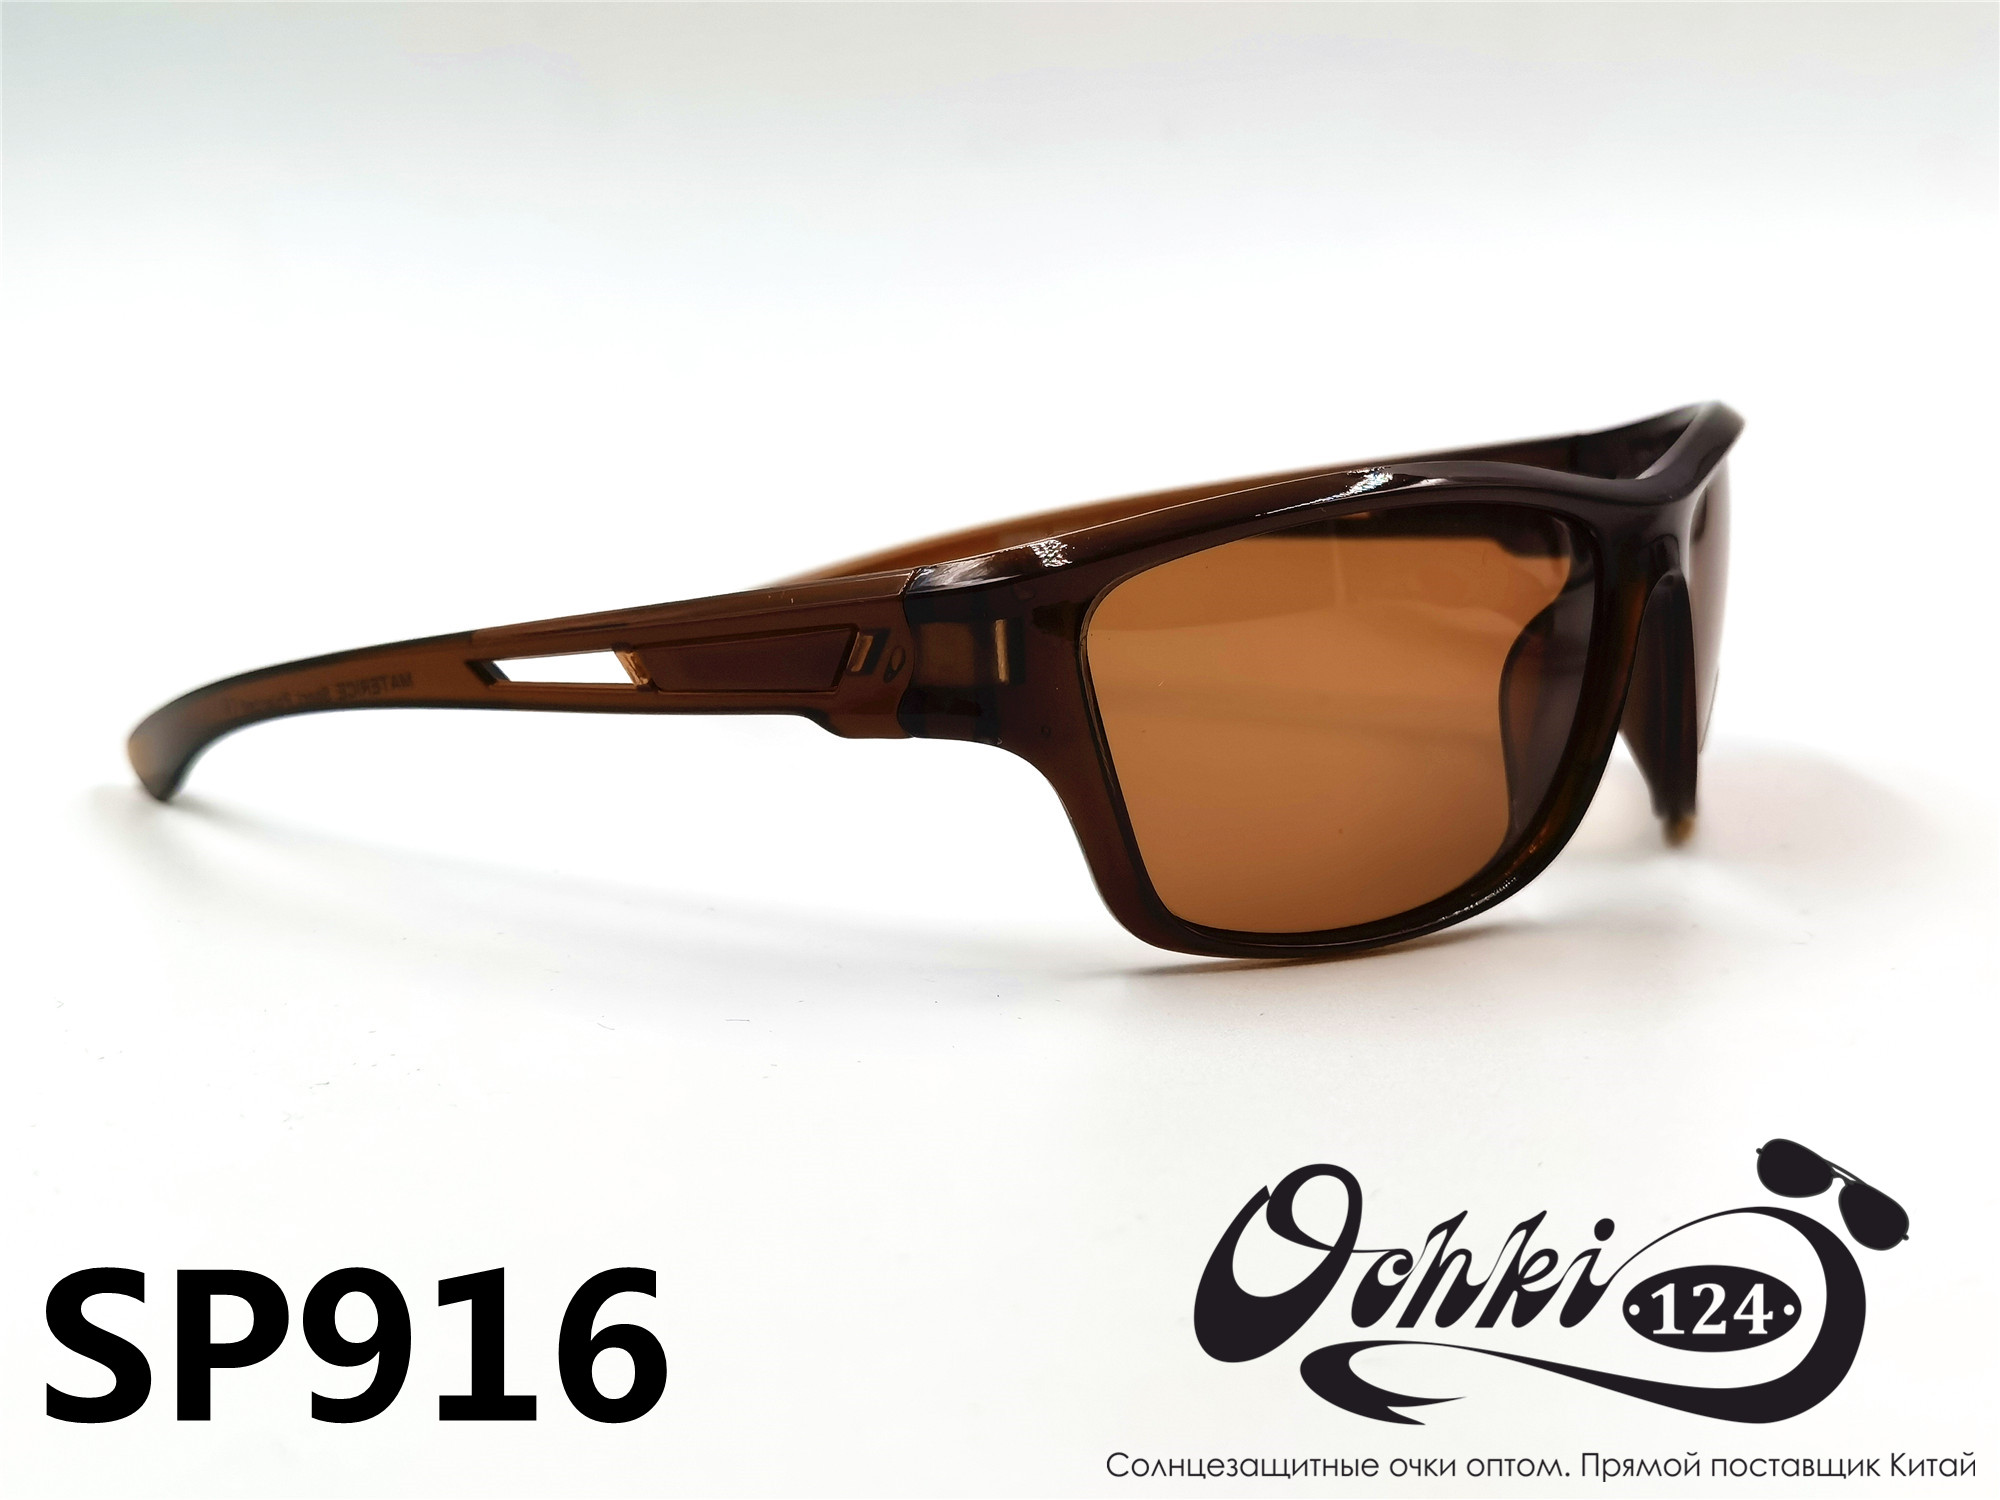  Солнцезащитные очки картинка 2022 Мужские спорт Поляризованные Materice PS916-3 